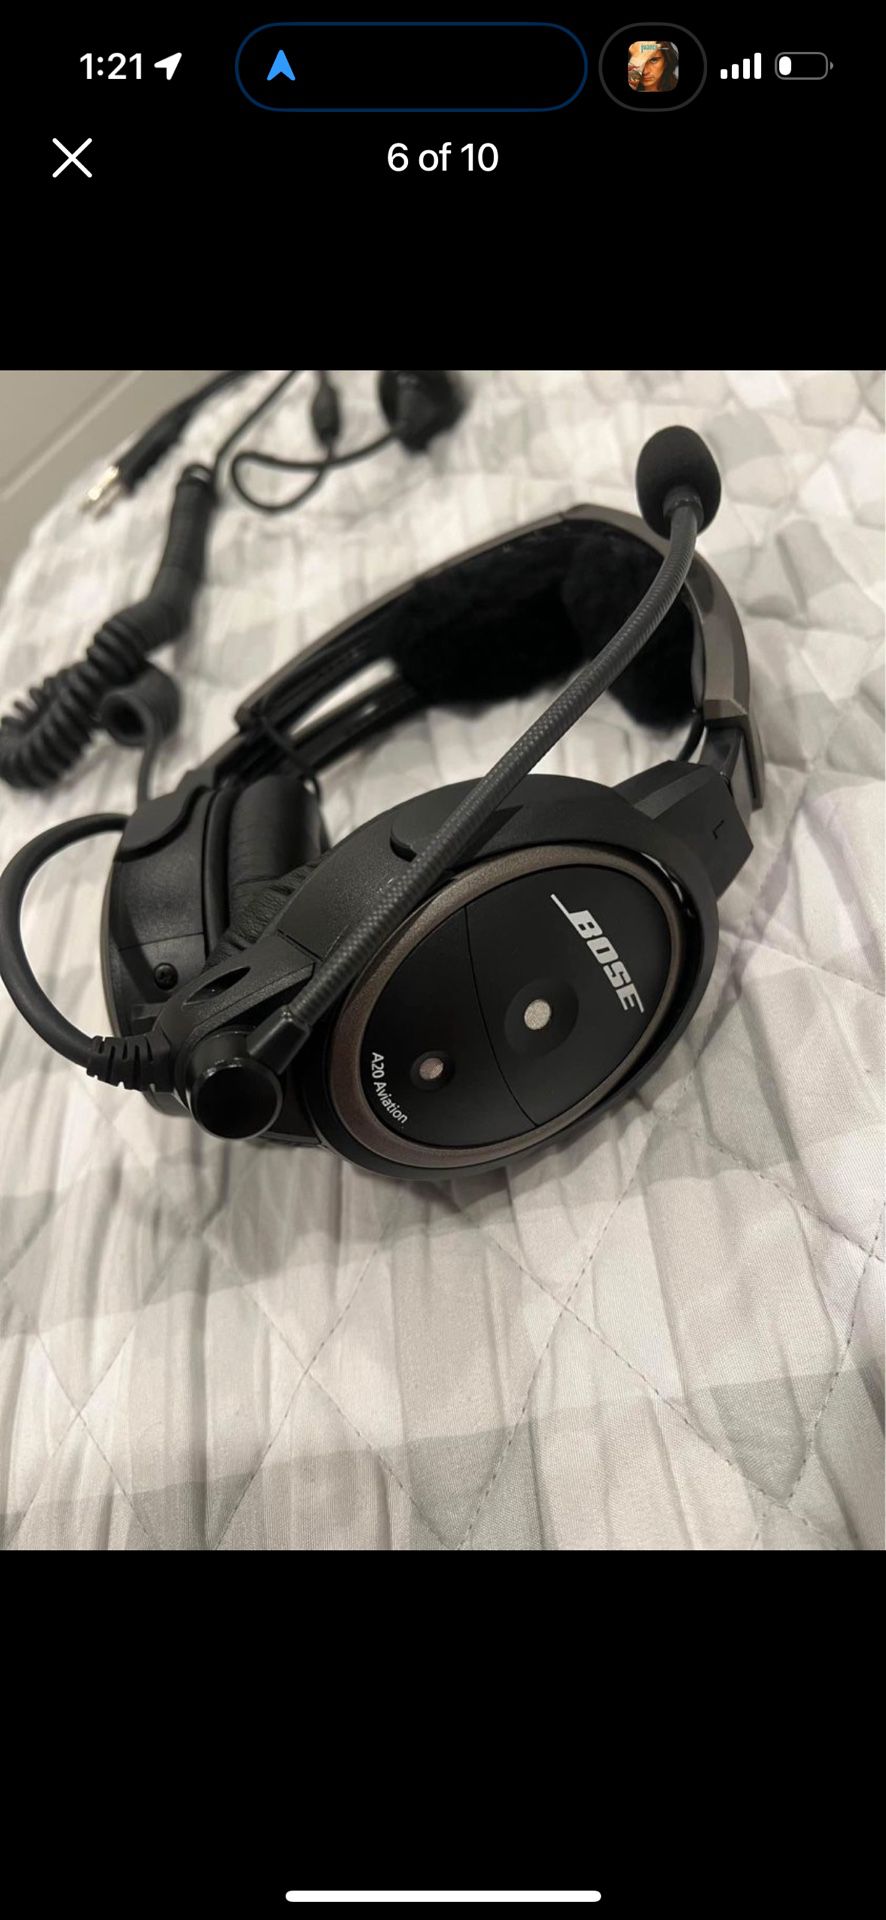 Bose A20 headset